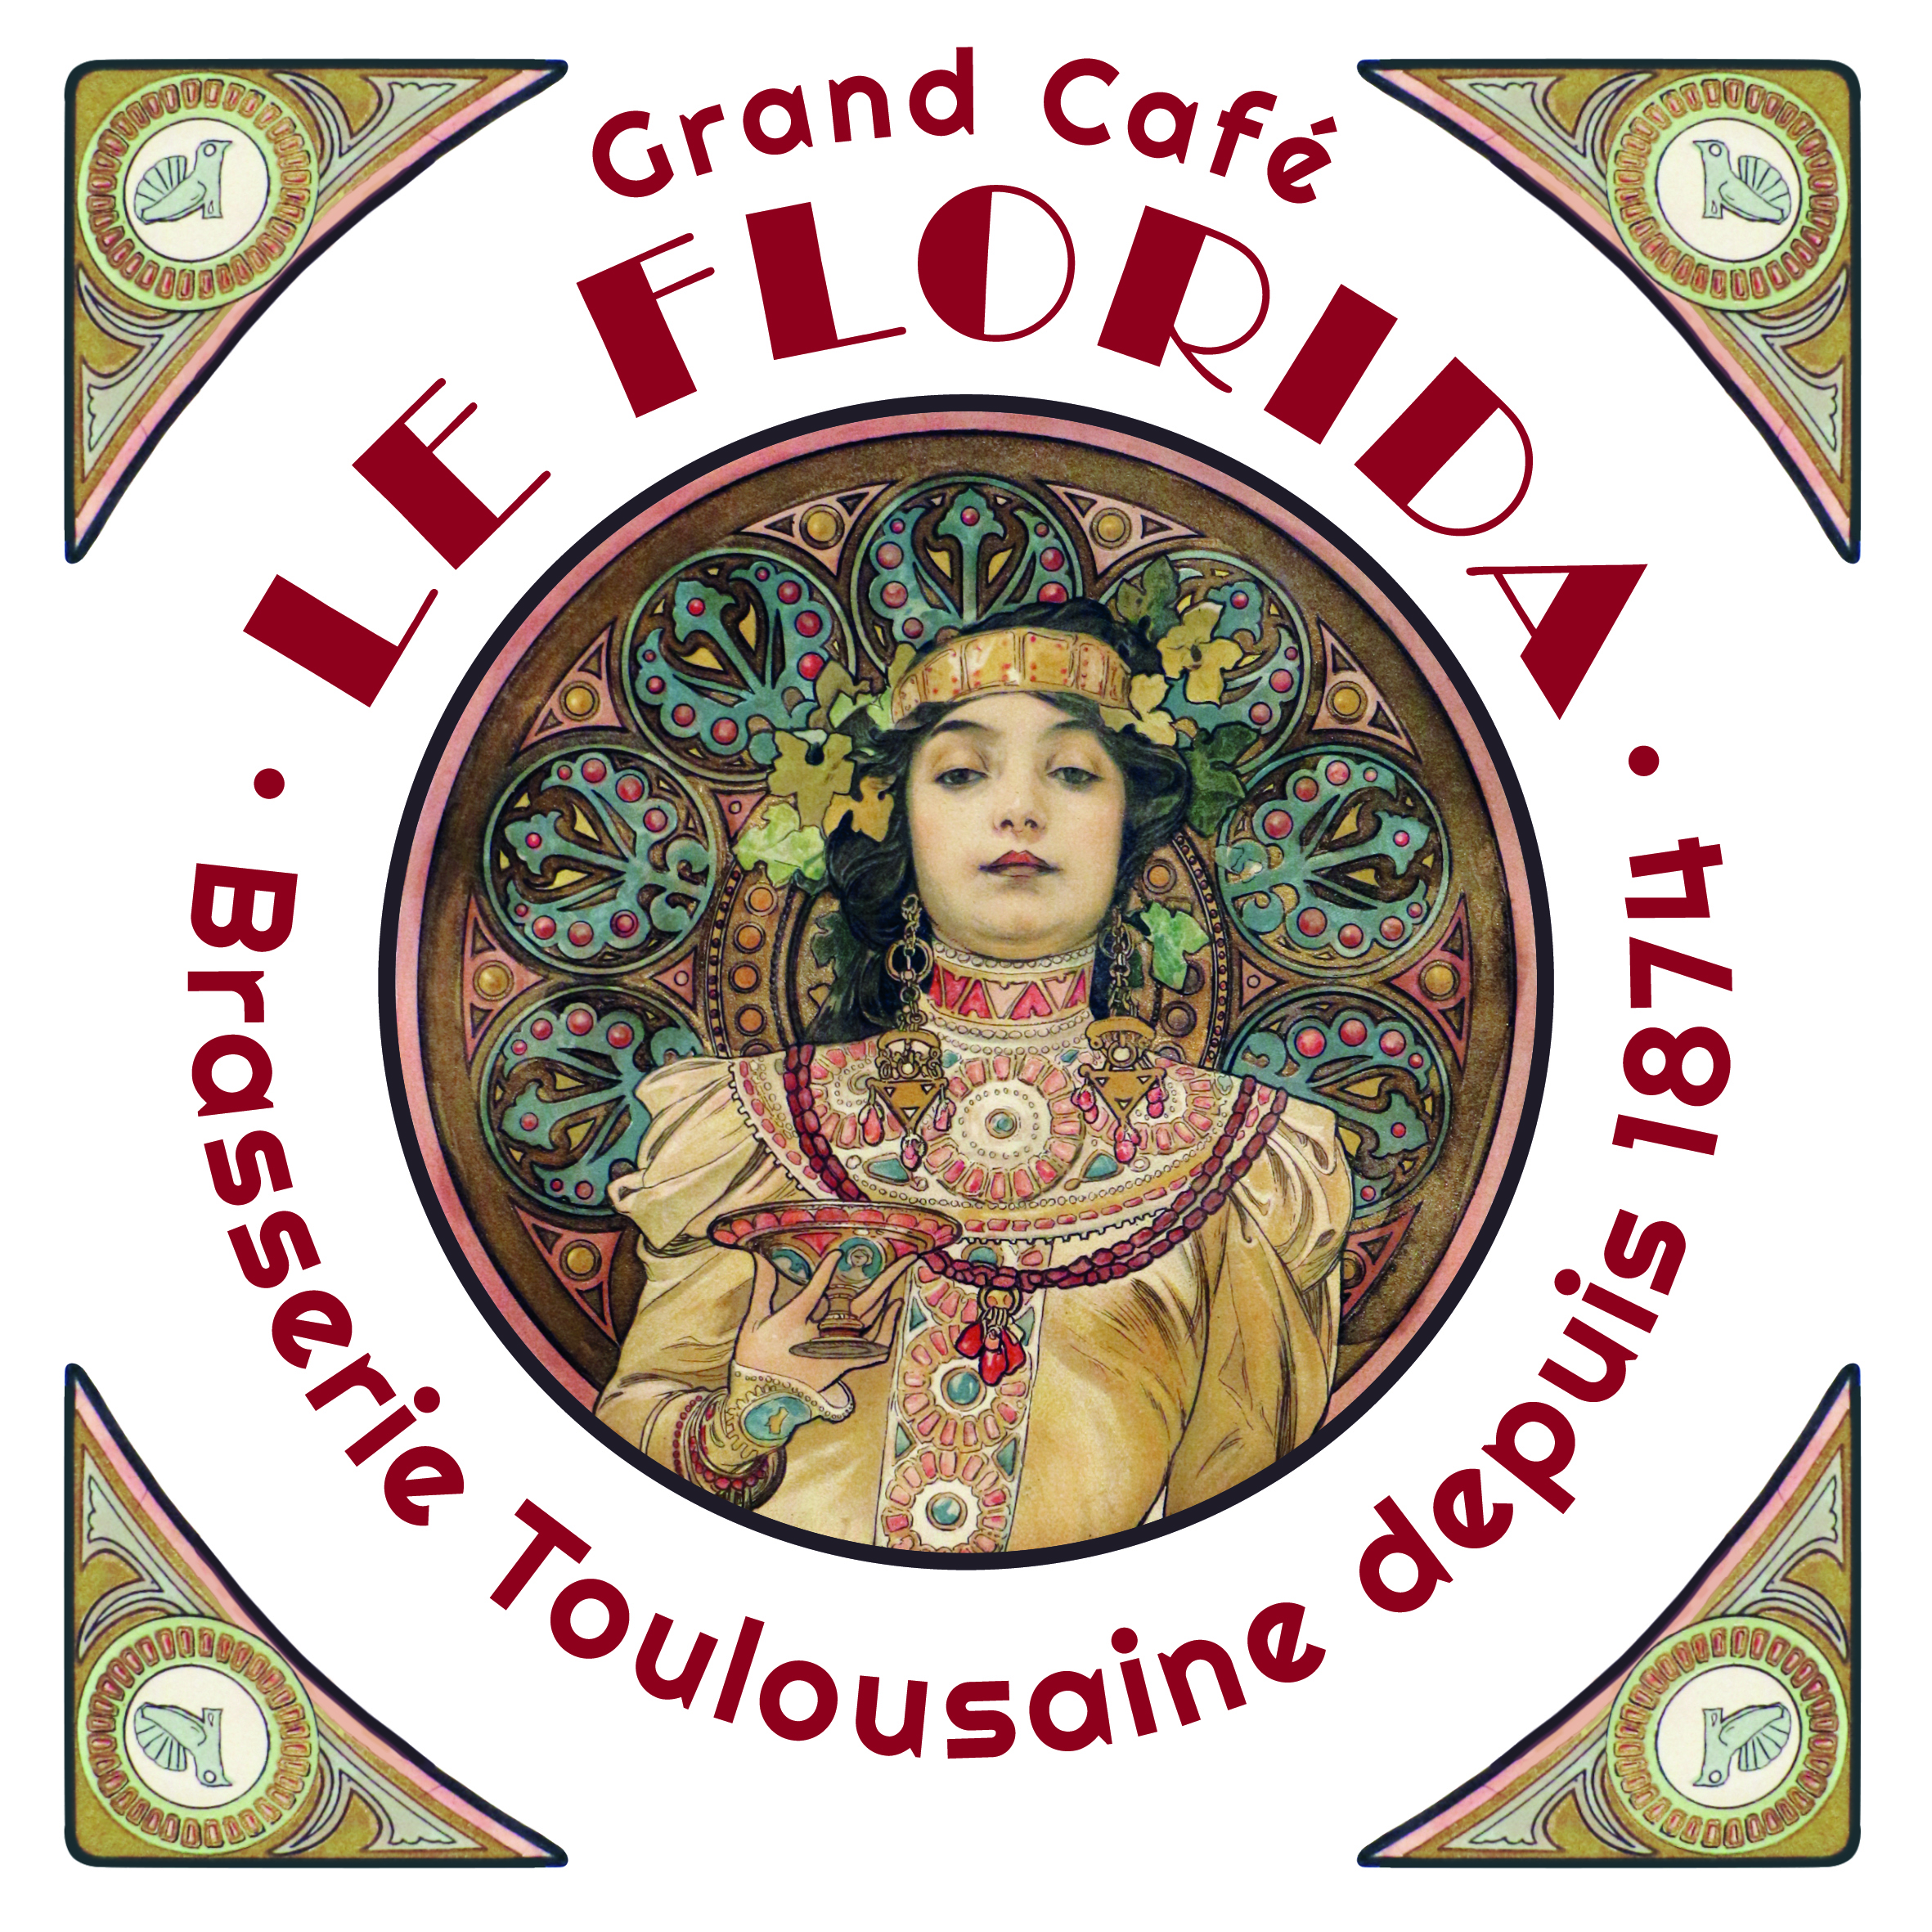 Grand Café Le Florida